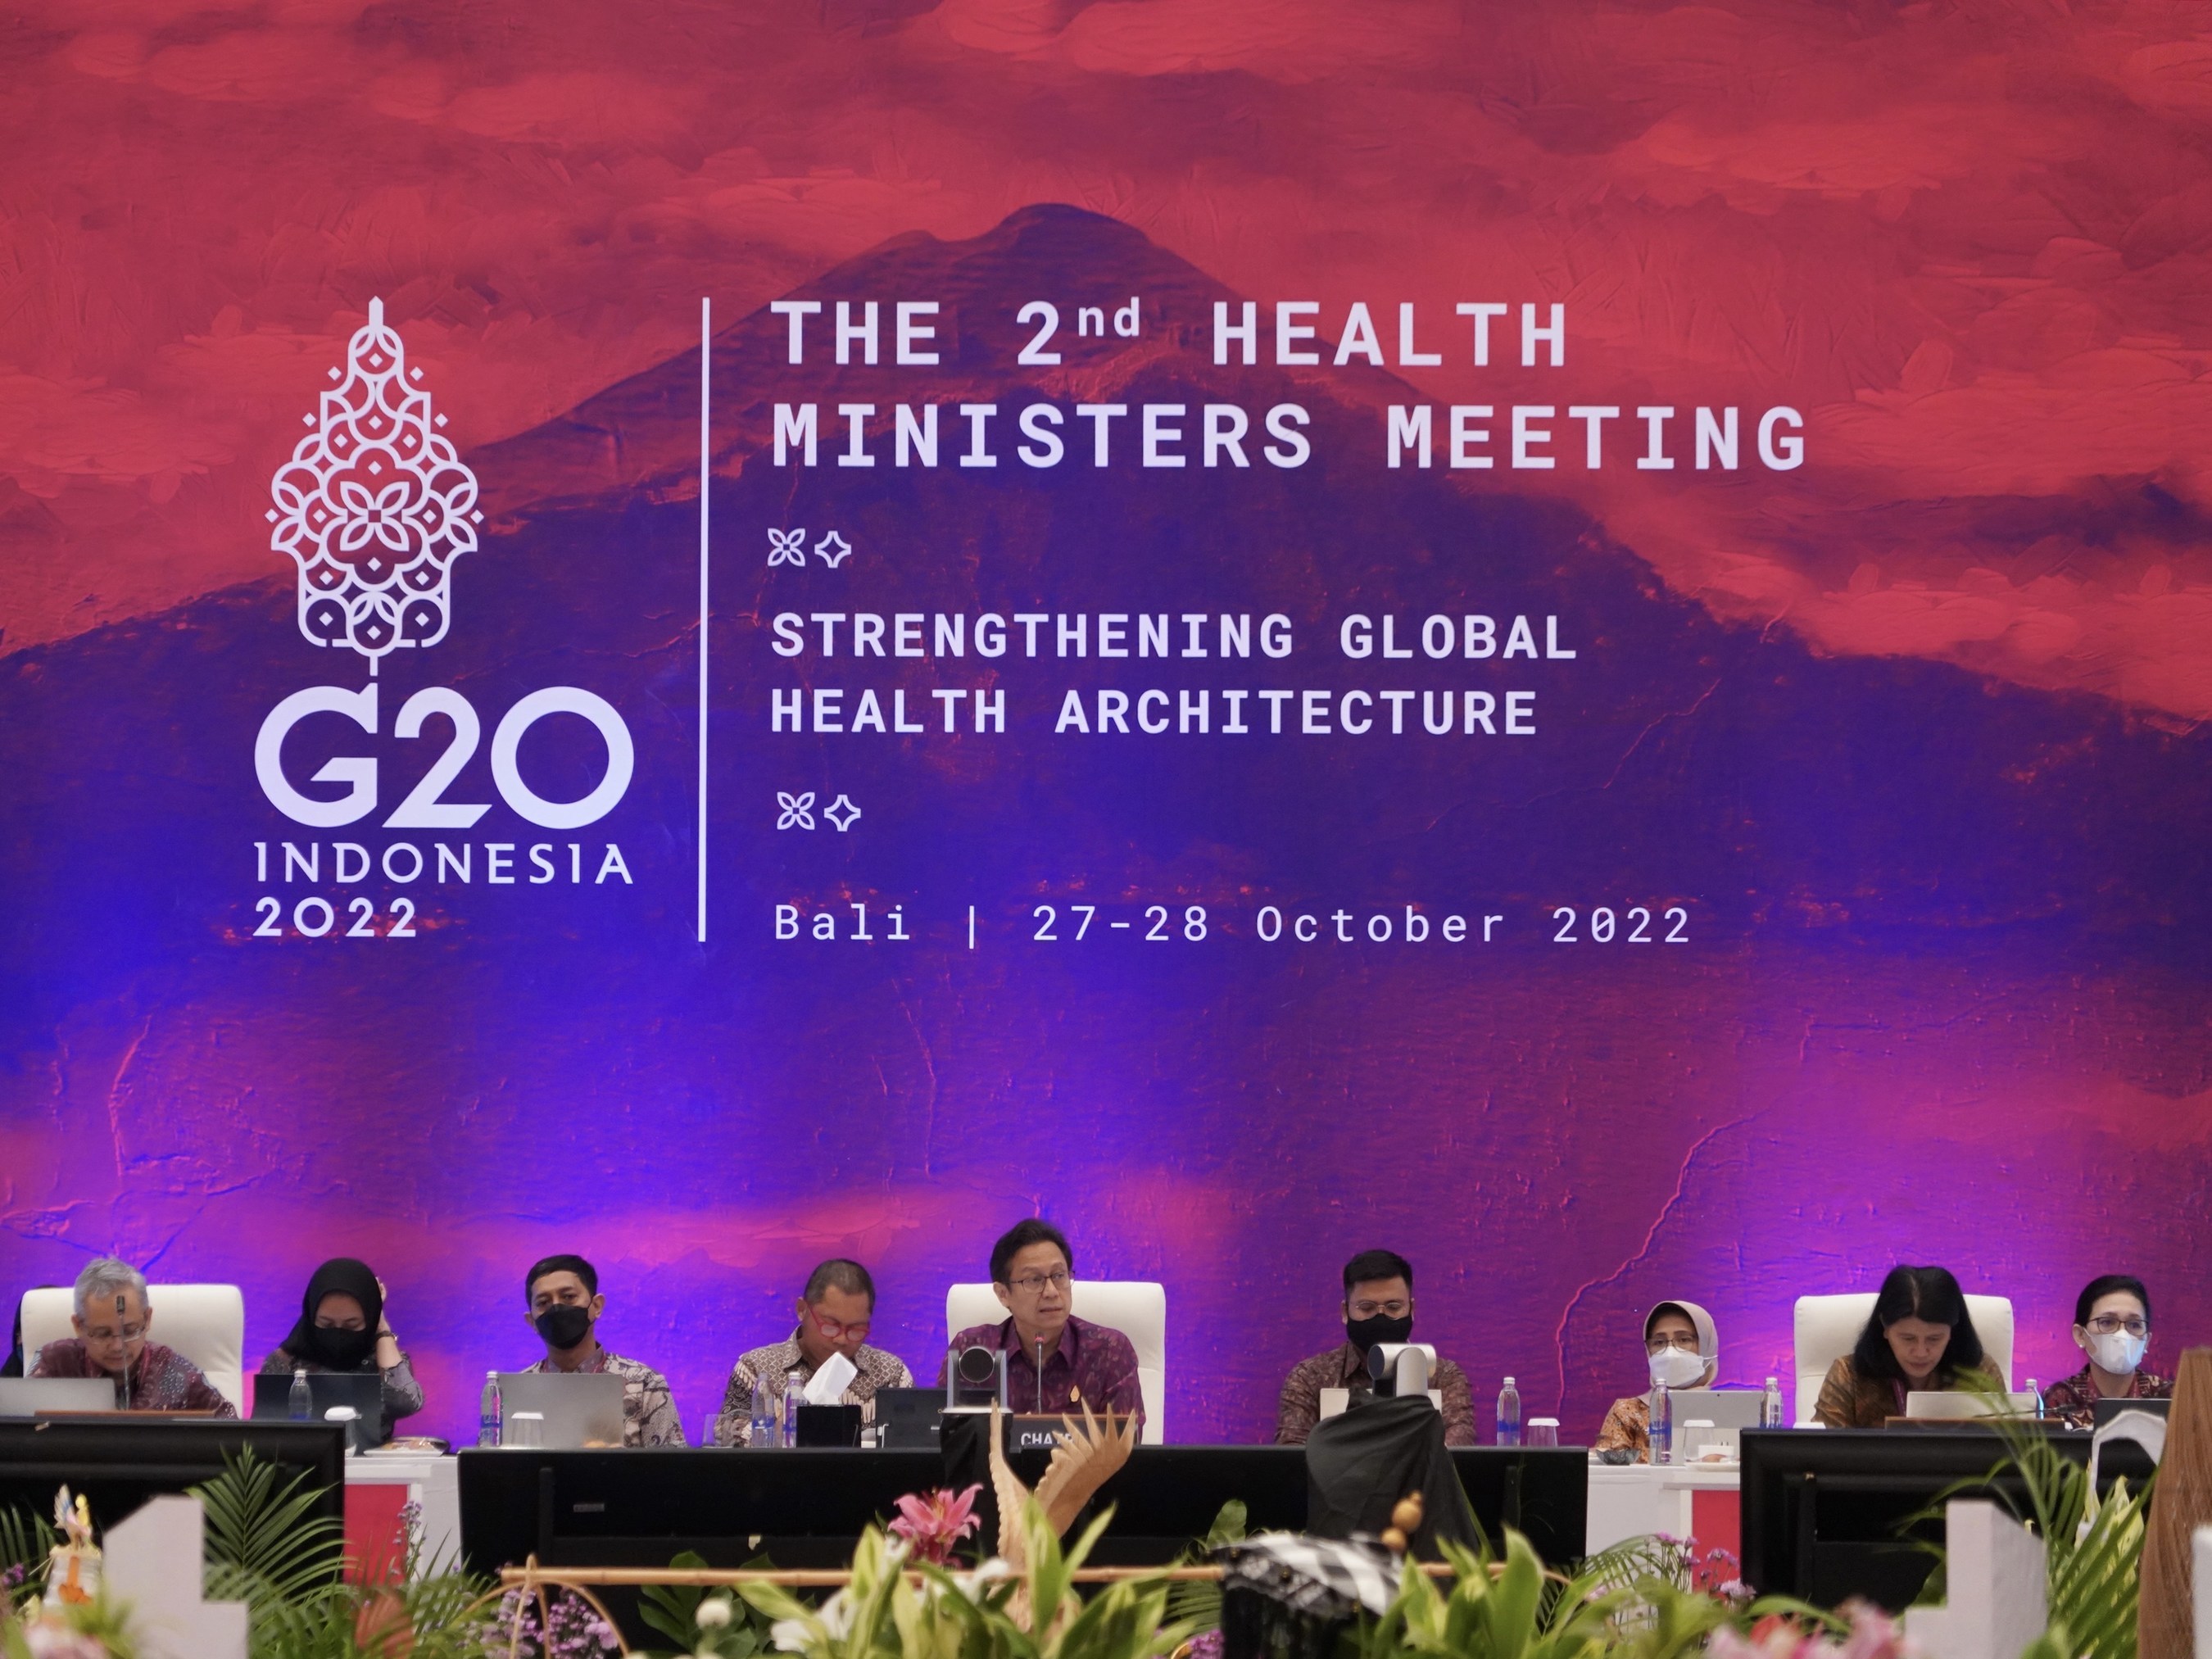 二十国集团卫生部长会议制定了加强全球卫生架构的关键行动